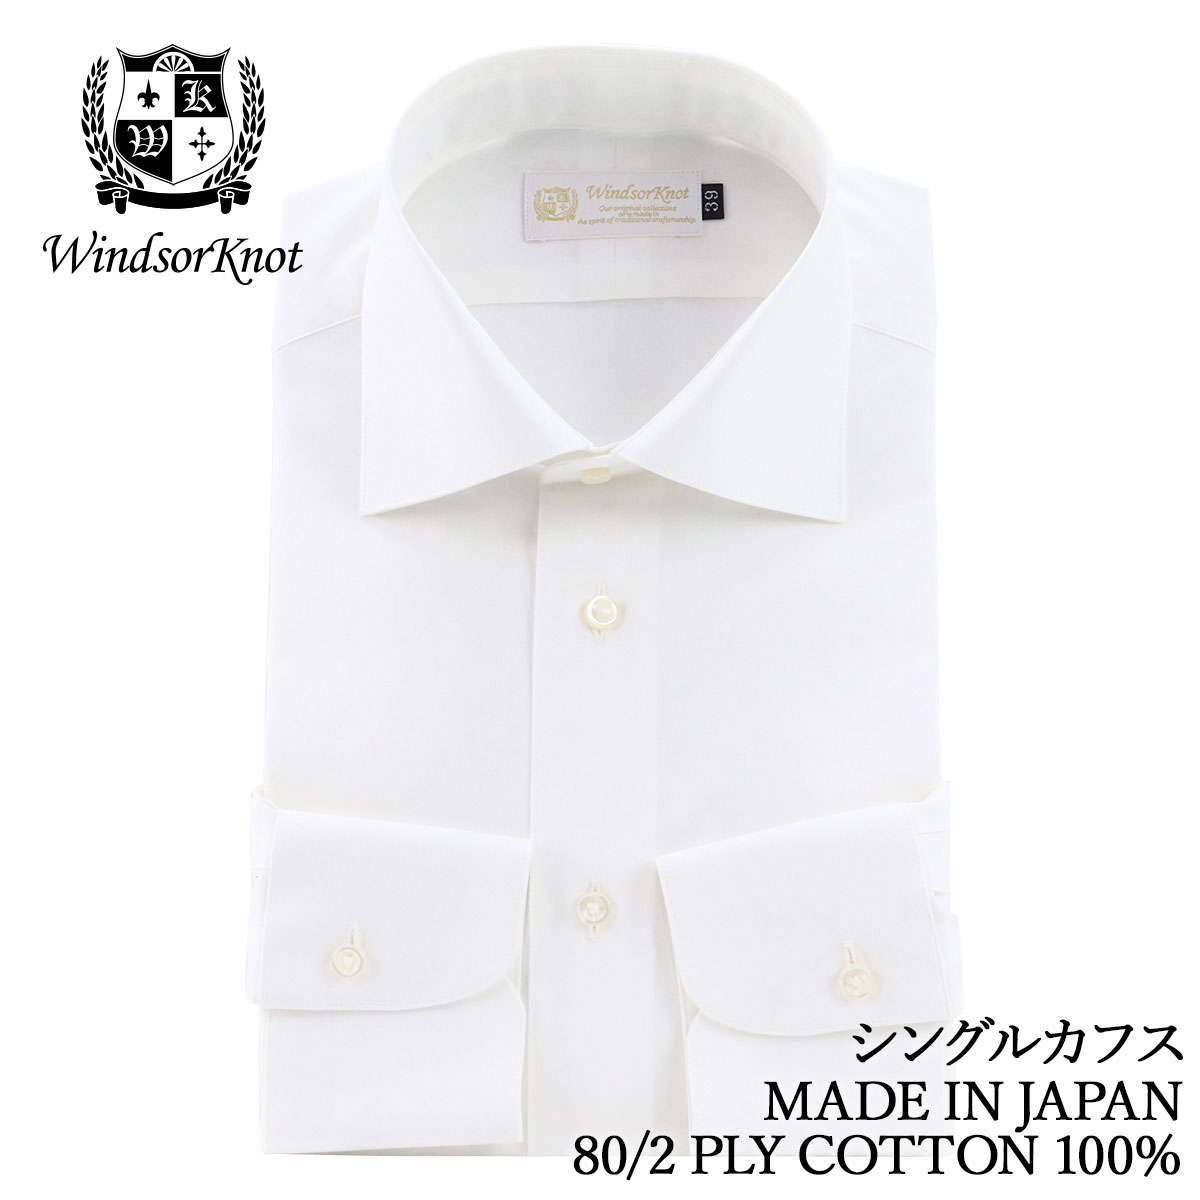  ワイシャツ ワイドカラー 白 無地 ホワイト 綿100% 日本製 スリム 長袖 メンズ ドレスシャツ ビジネス フォーマル ブロード 80番手 双糸 | 父の日 結婚式 ギフト ブランド おしゃれ